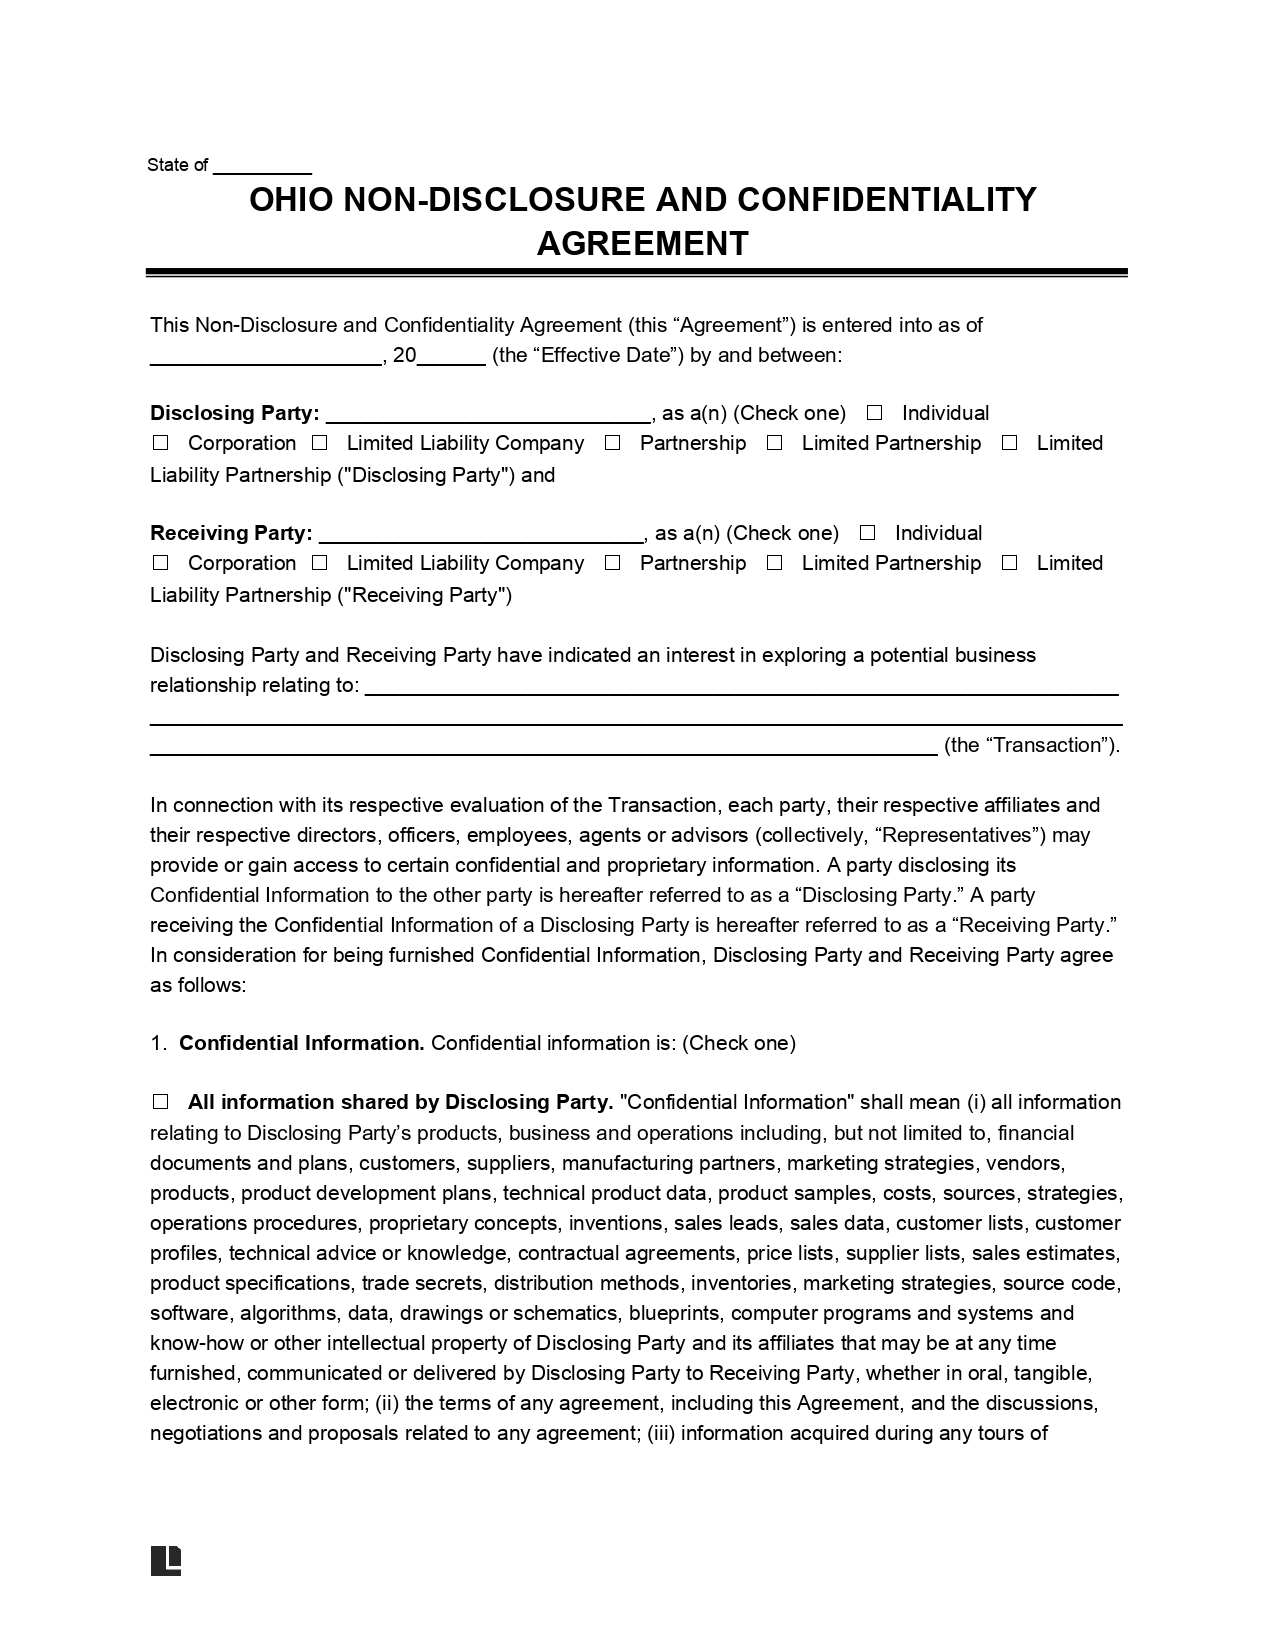 Ohio Non-Disclosure Agreement Template